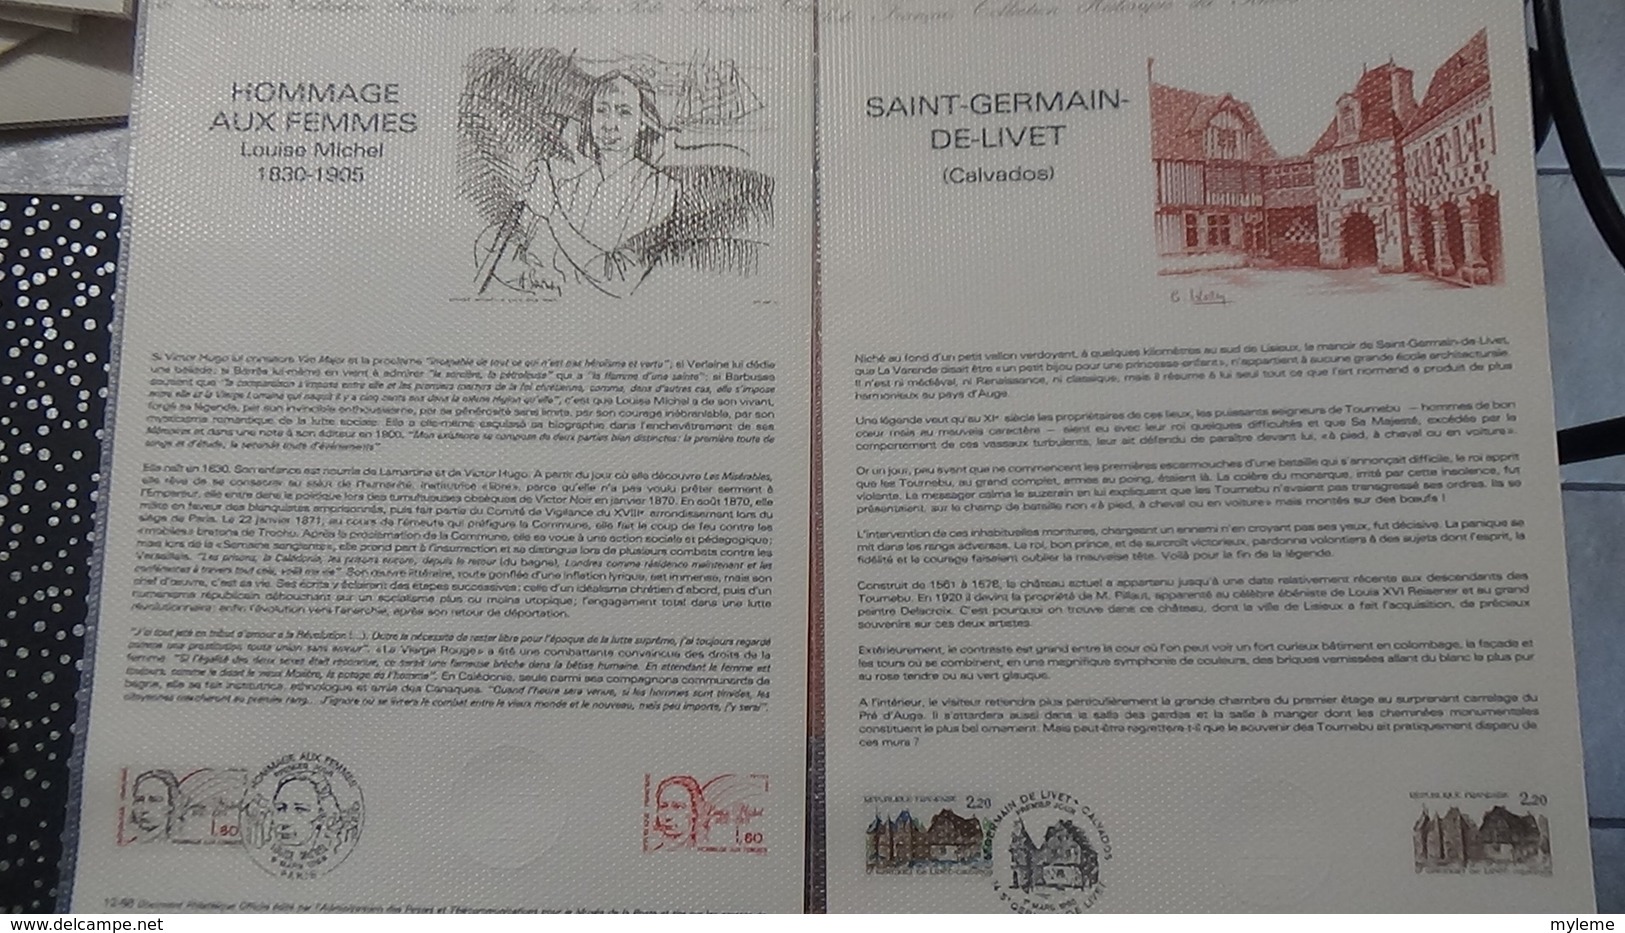 Lot de 39 documents philatéliques de 1986 Côte catalogue 2003 : 438 euros.PORT 8.95€ OFFERT. A saisir !!!